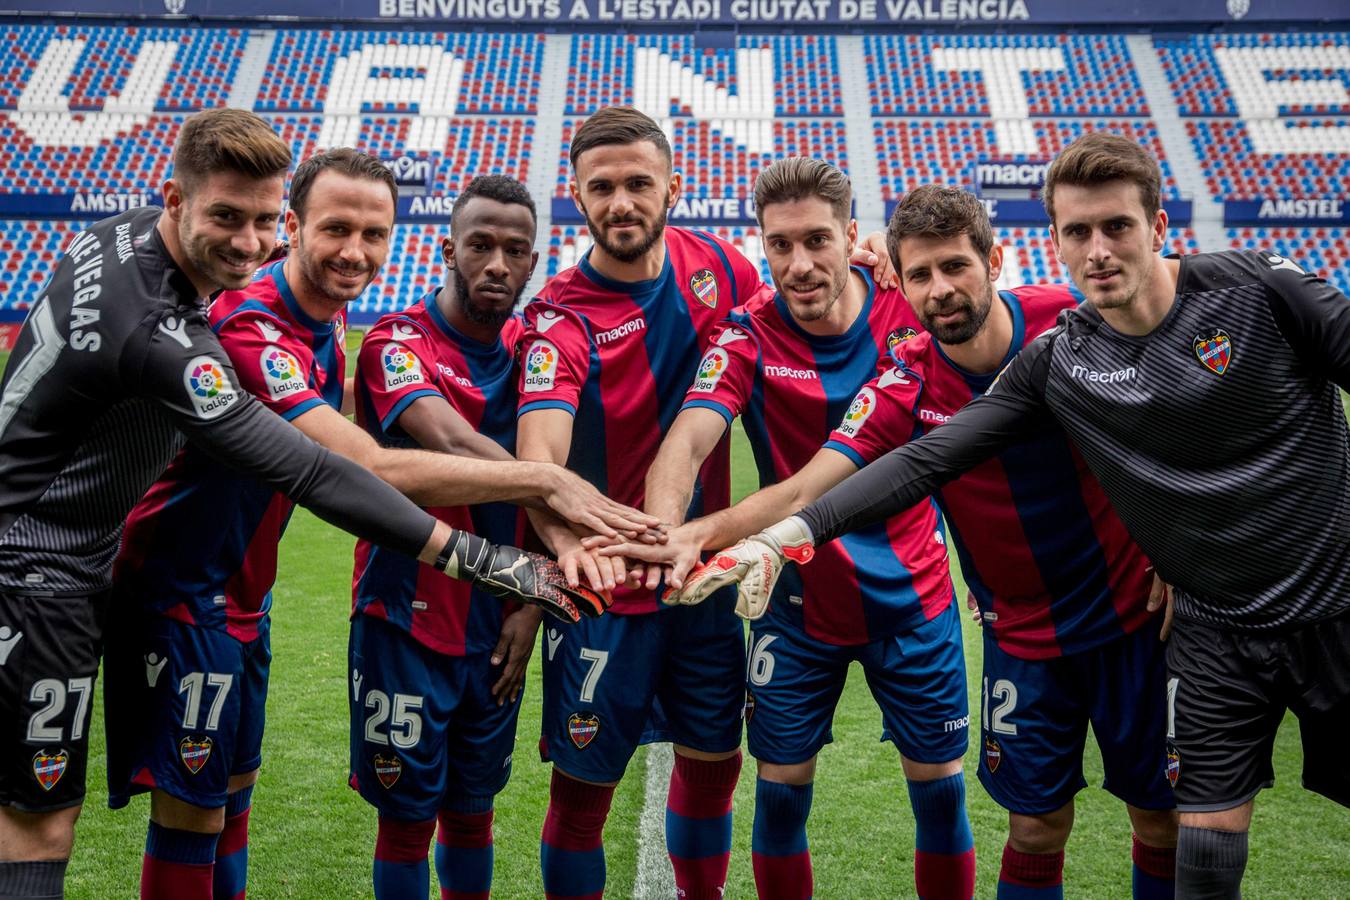 El Levante UD ha presentado este viernes sus nuevos fichajes, los futbolistas Armando Sadiku, Giampaolo Pazzini, Rubén Rochina, Coke Andújar, Fahad Al-Muwallad y, para la portería, a Koke Vegas e Iván Villar.